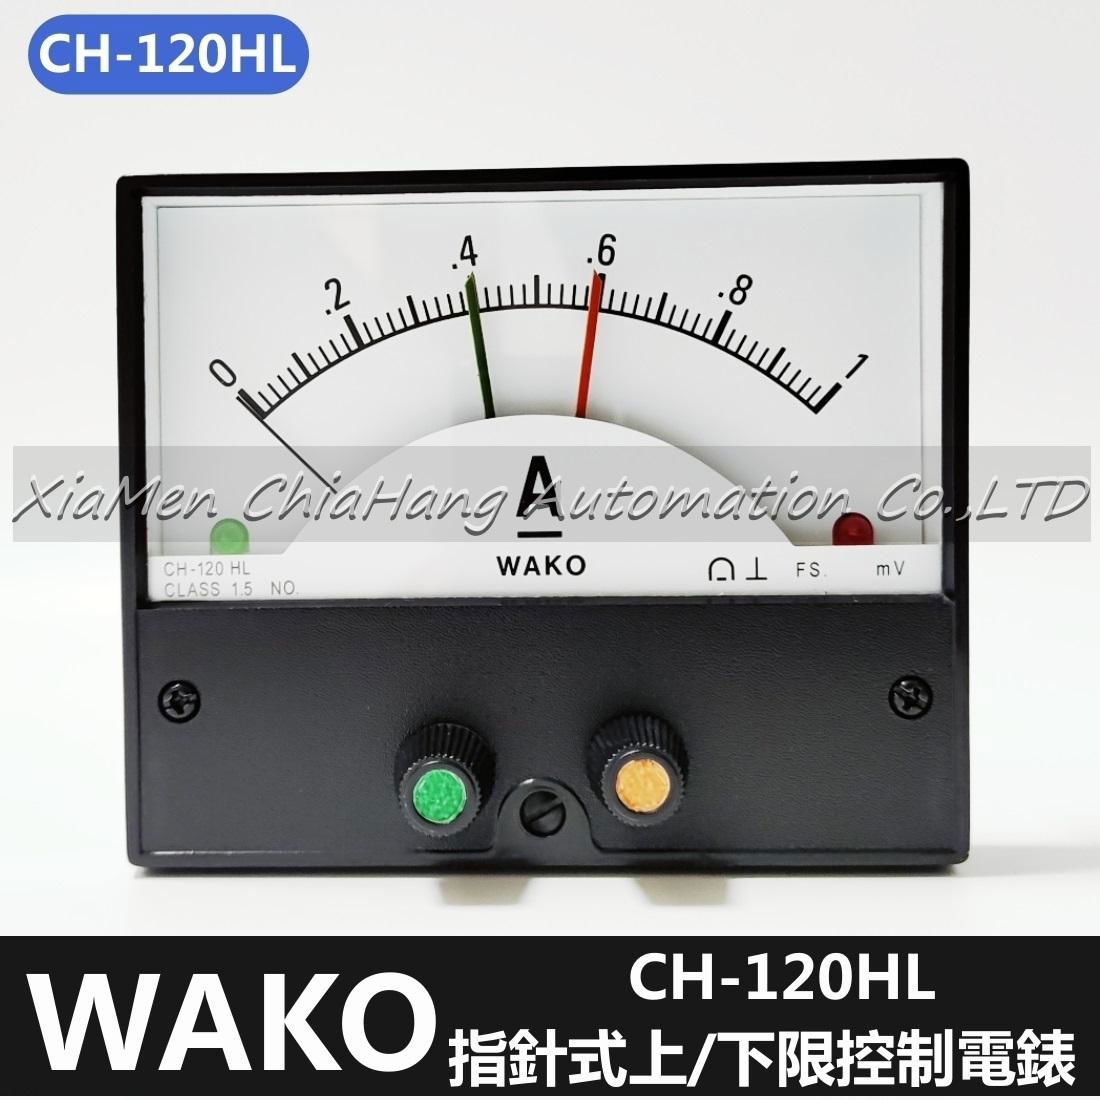   WAKO CH-120HL CH-100HL指針式電流控製表   直流/交流限流控製表  